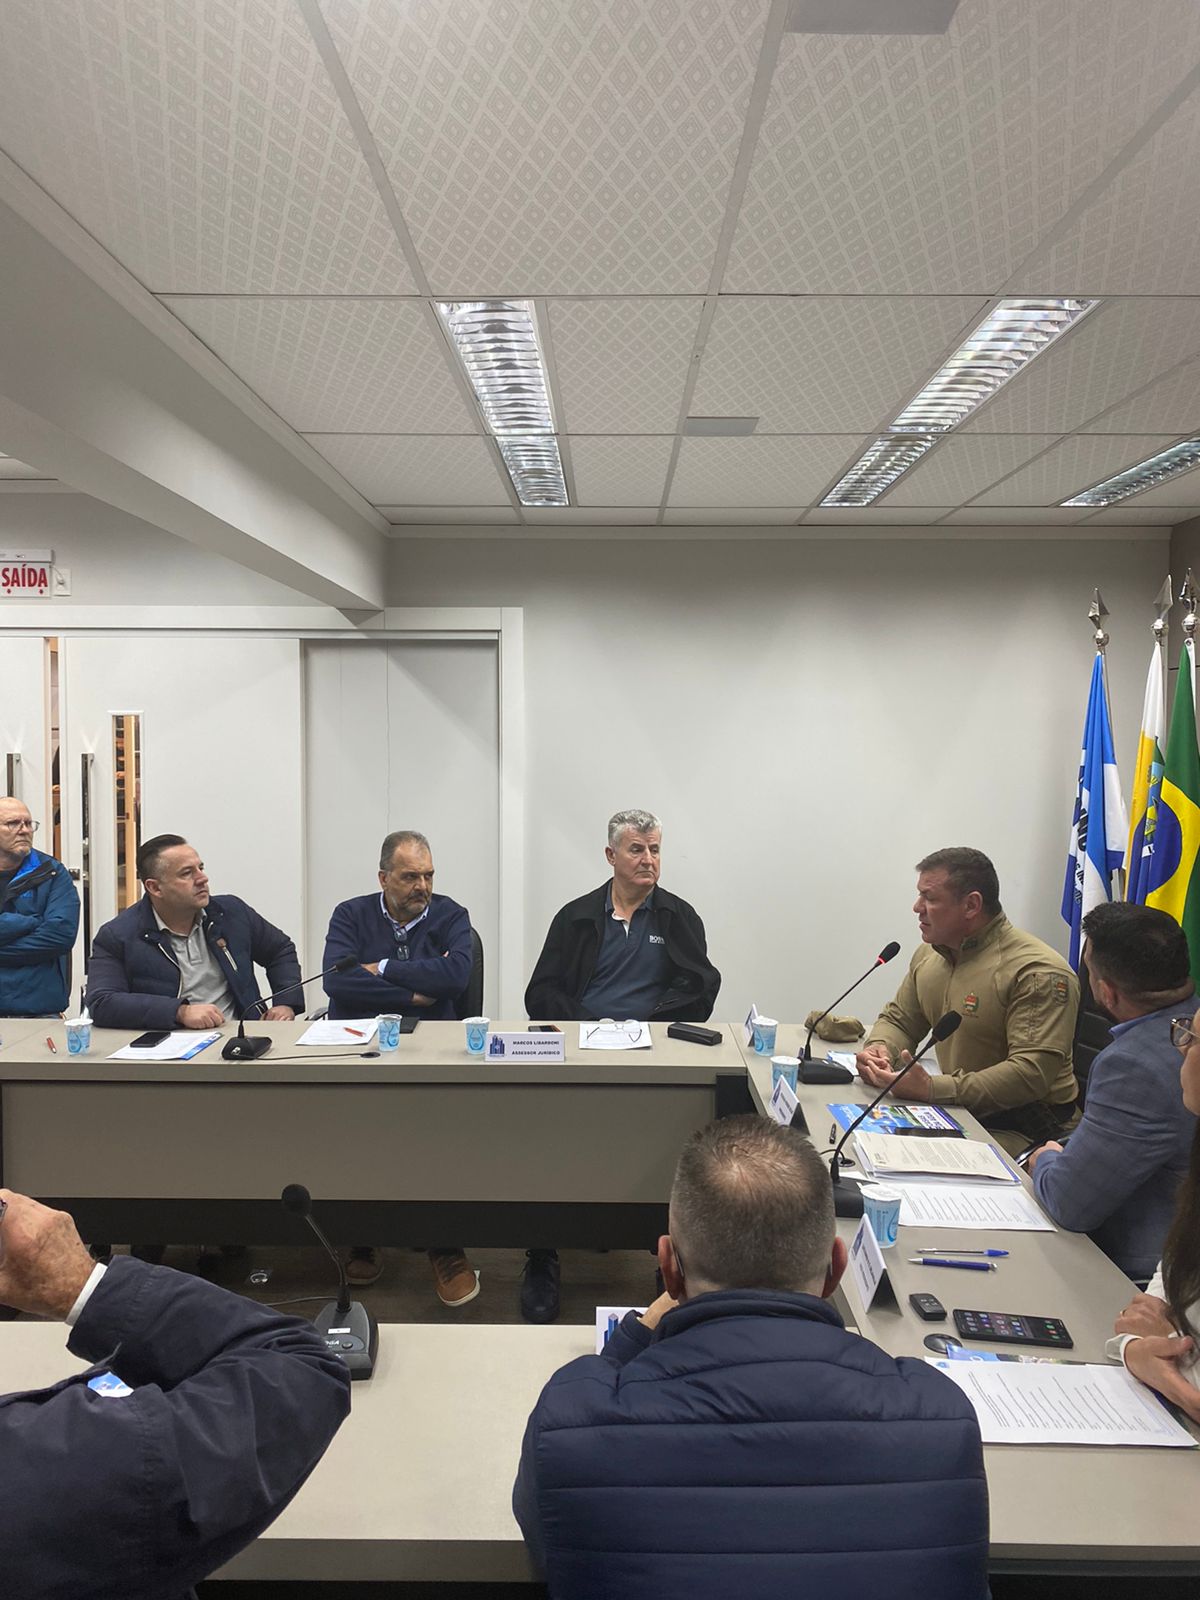 Furtos e Roubos na Construção Civil: Polícia Militar planeja canal de comunicação para combater ocorrências em Itapema e Região